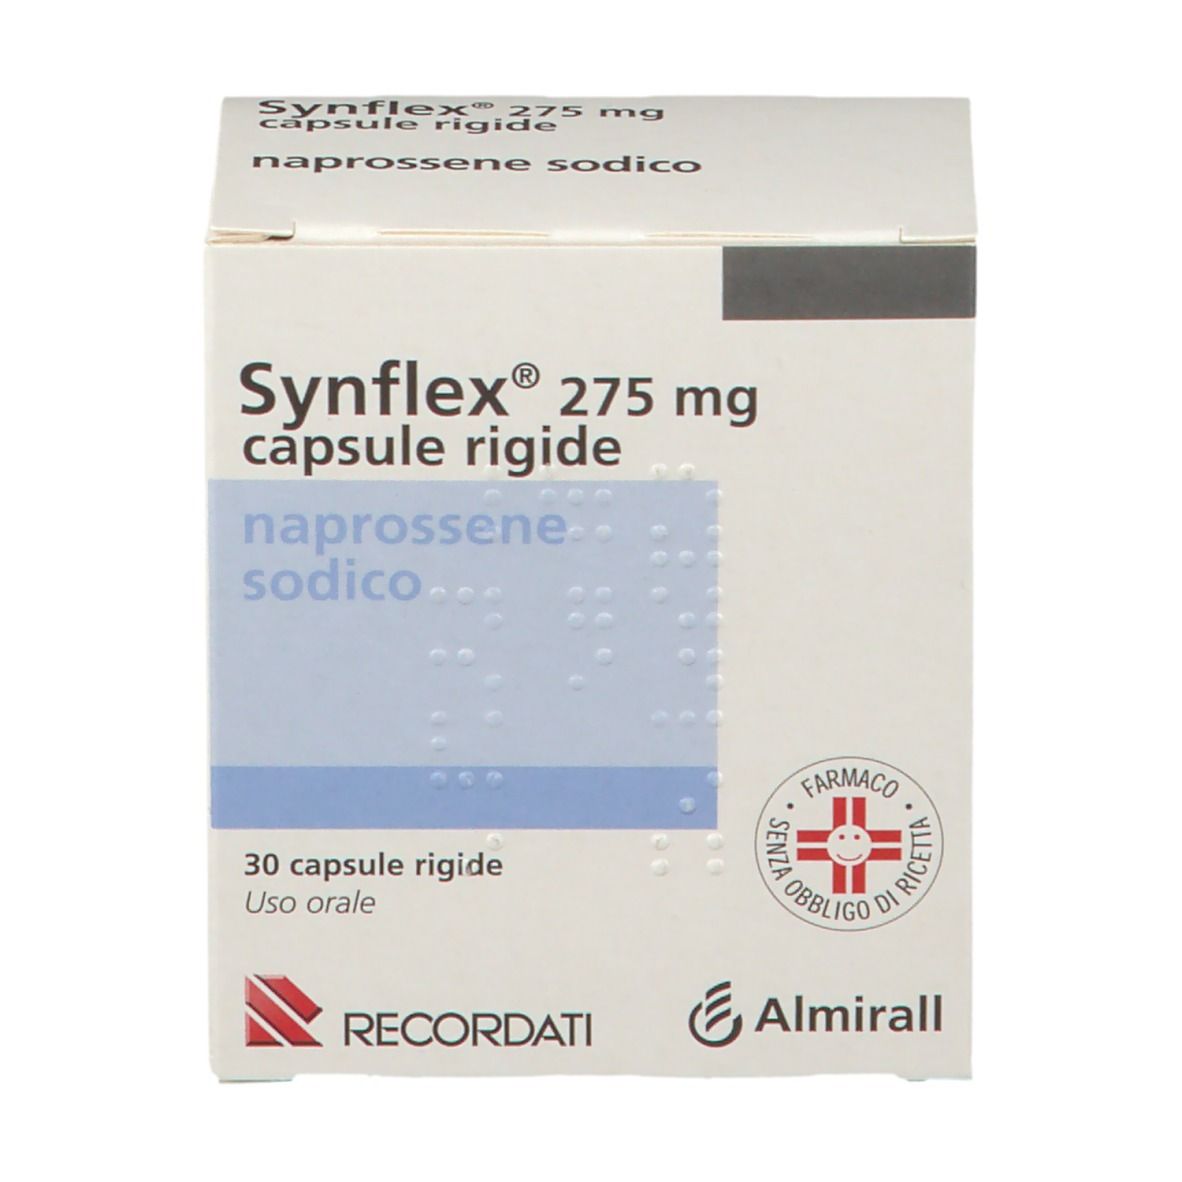 Synflex® capsule rigide